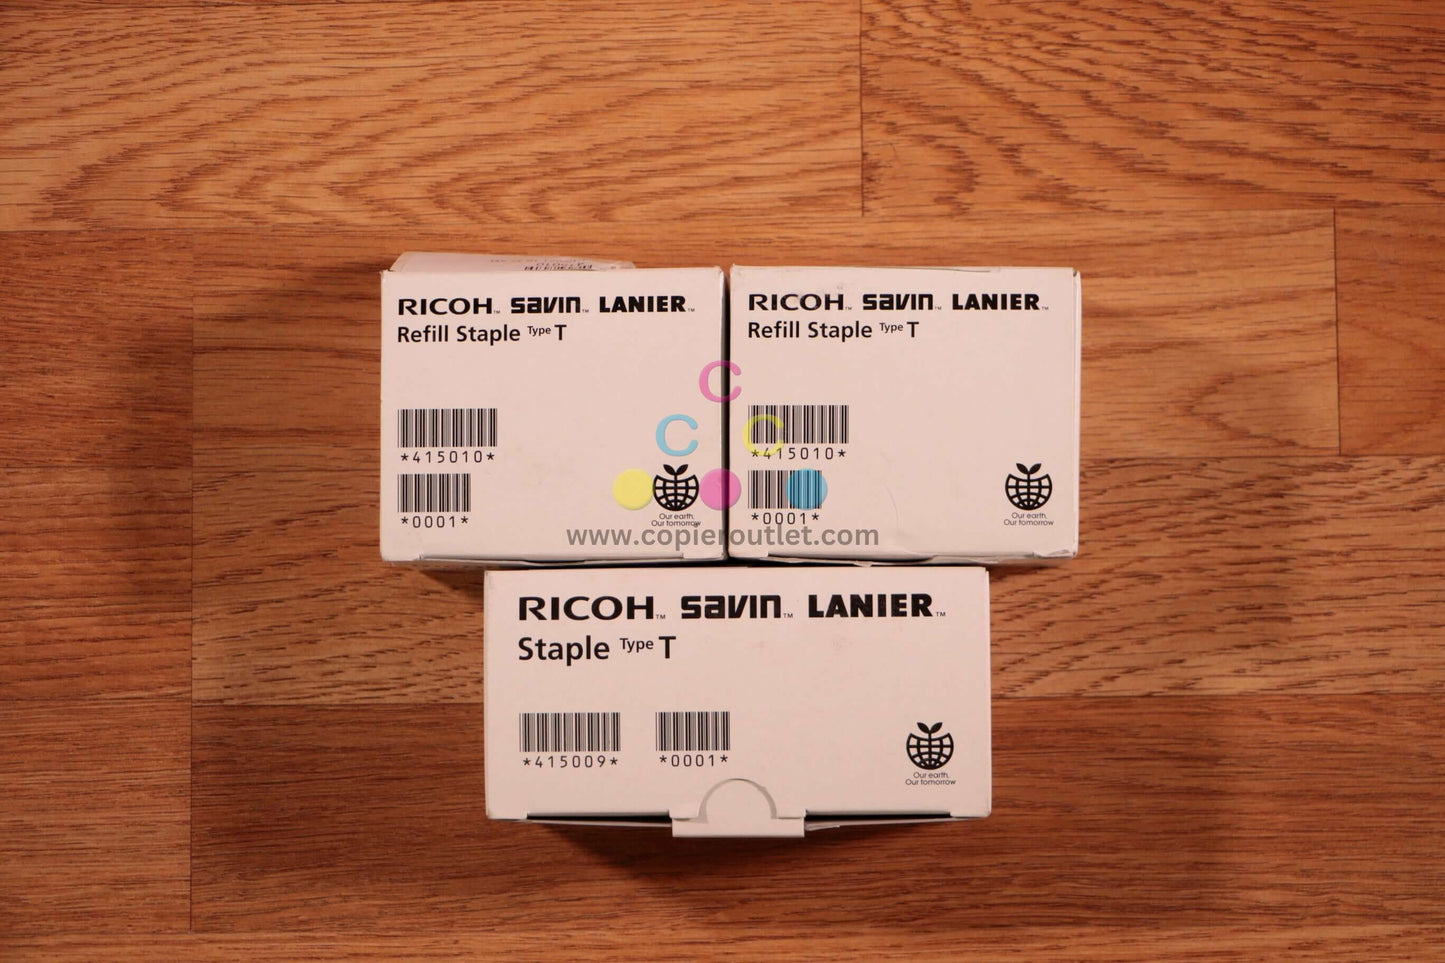 3 Ricoh Savin Lanier Staples Type T SR3140/ SR3140/ SR3160/ SR3170 EDP:415009,10 - copier-clearance-center